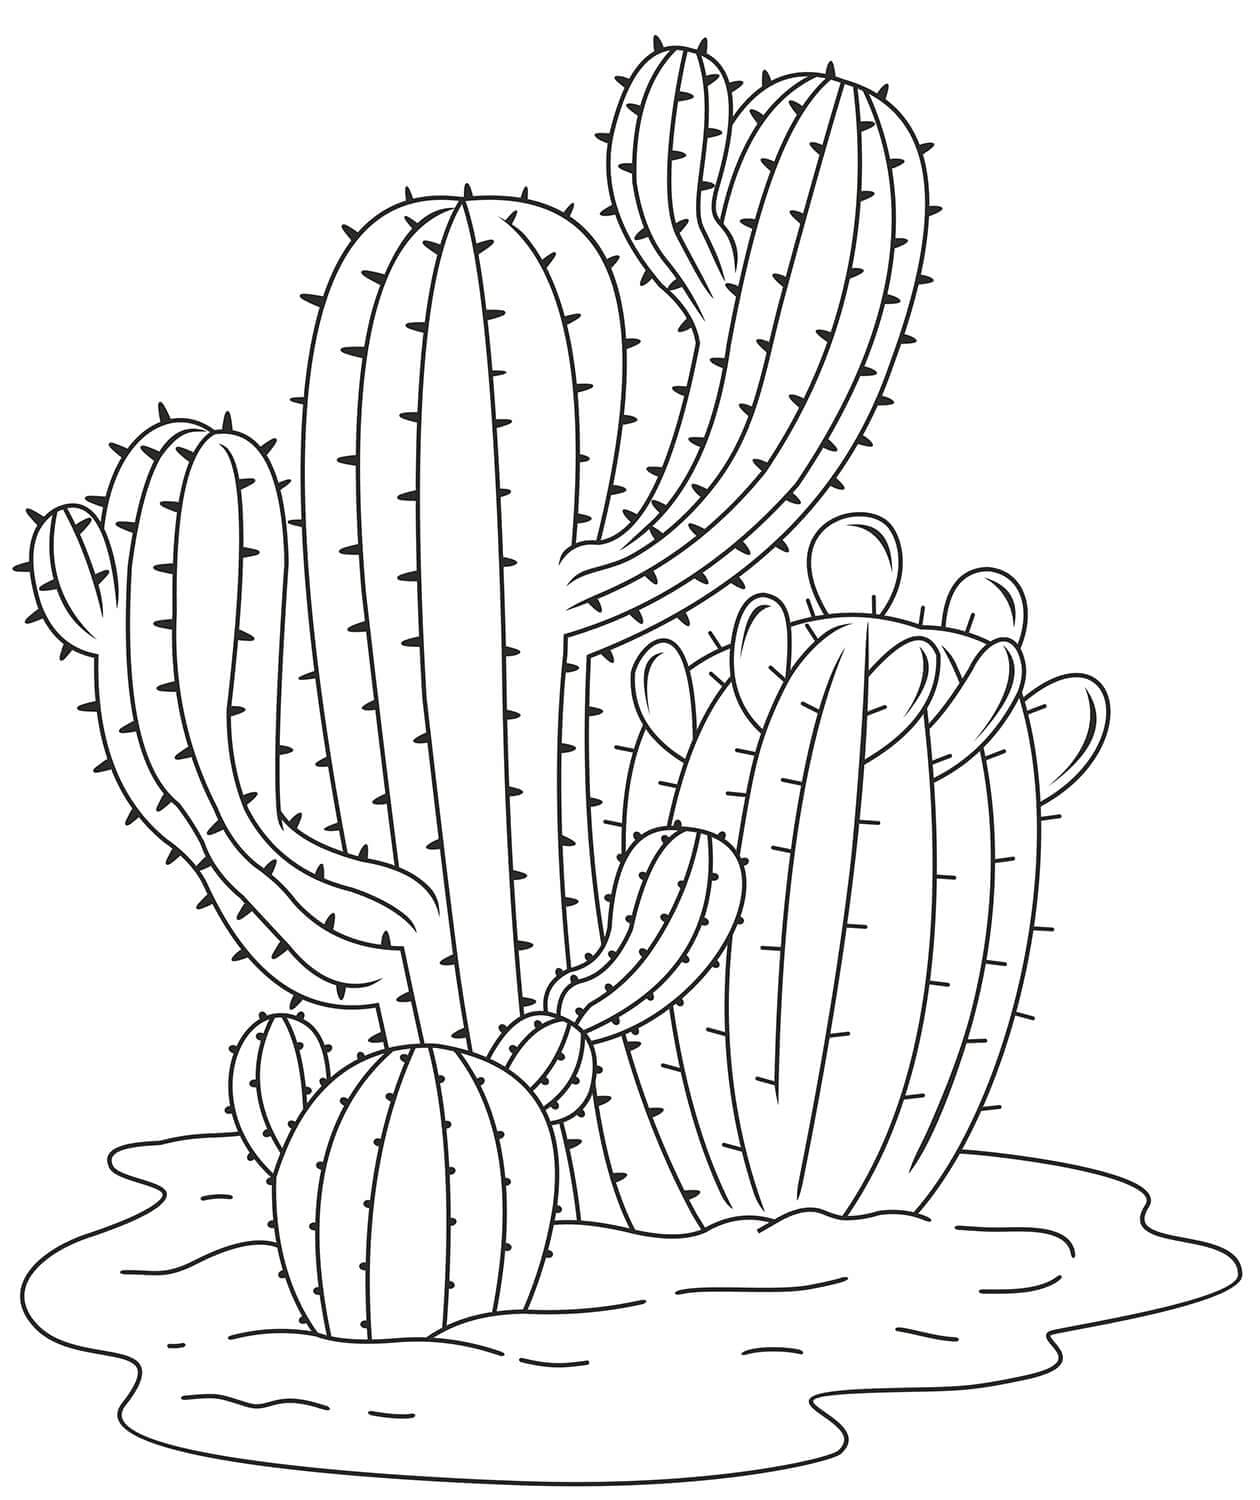 Kolorowanki Prosty kaktus